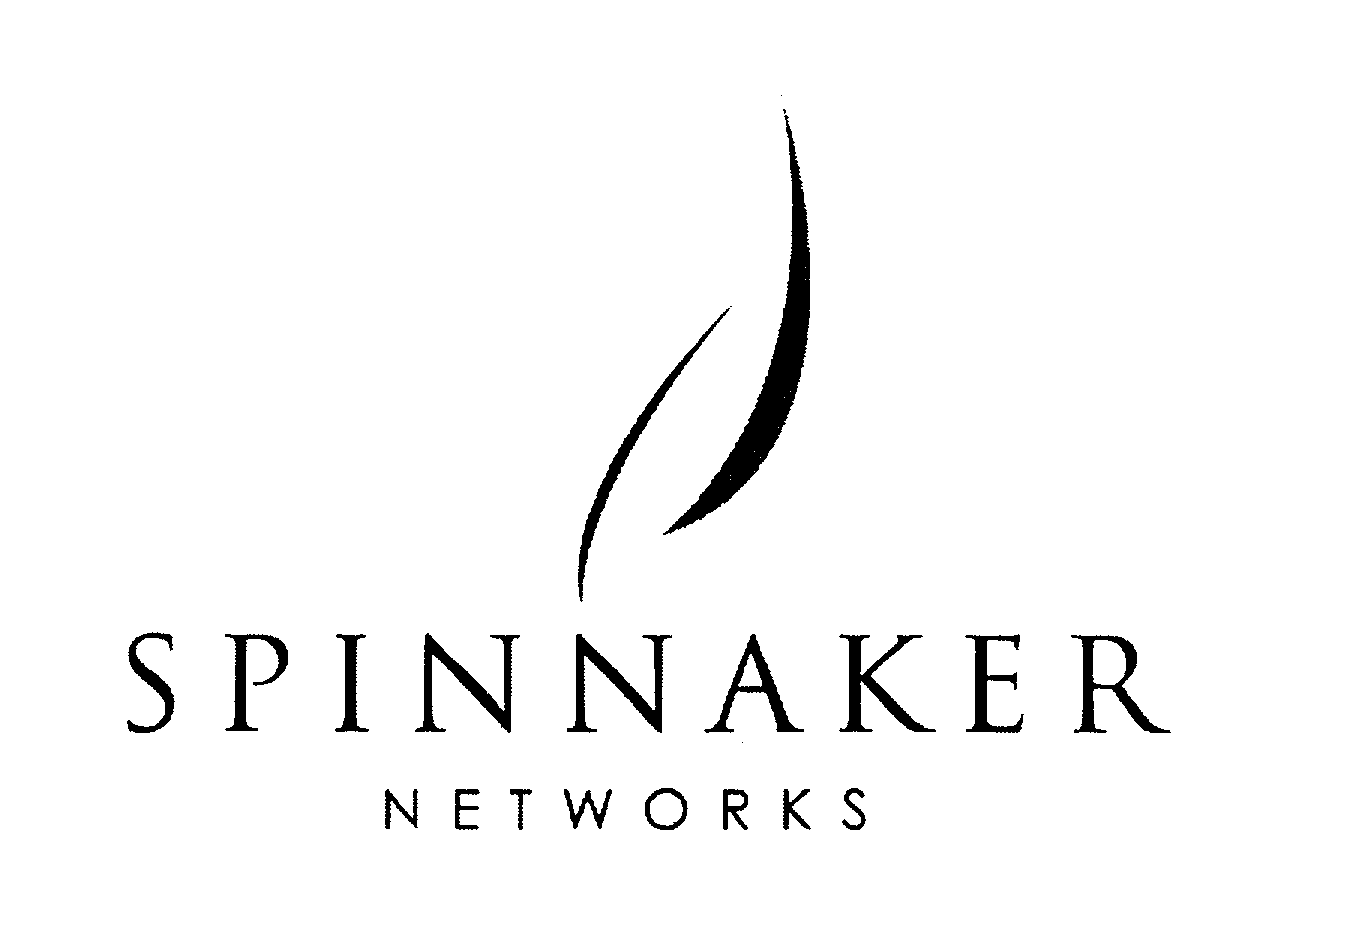 SPINNAKER NETWORKS